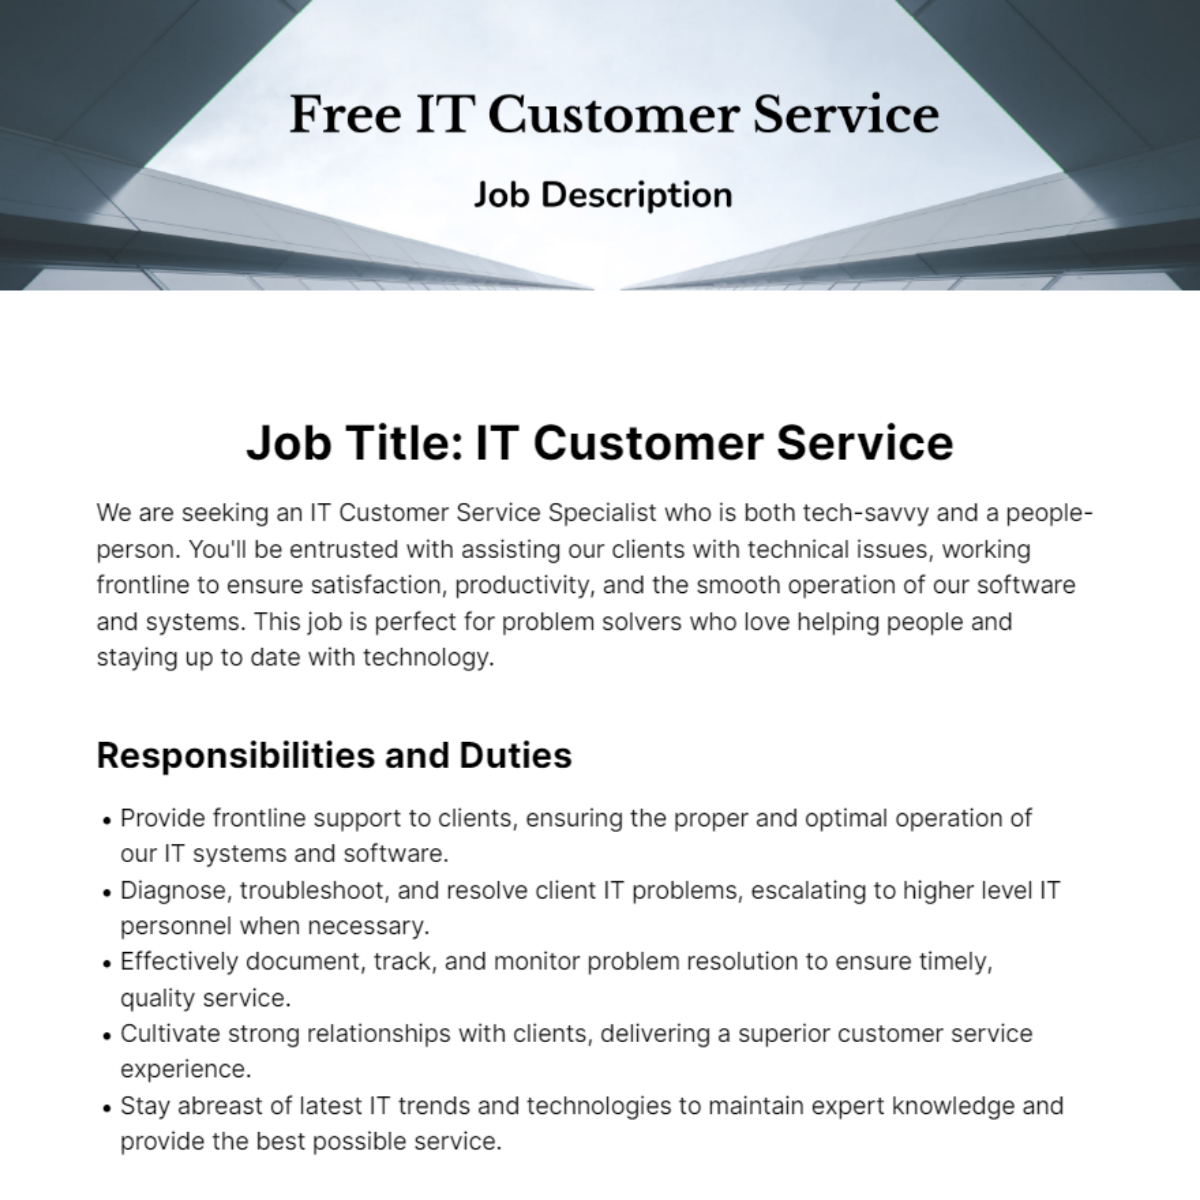 IT Customer Service Job Description Template